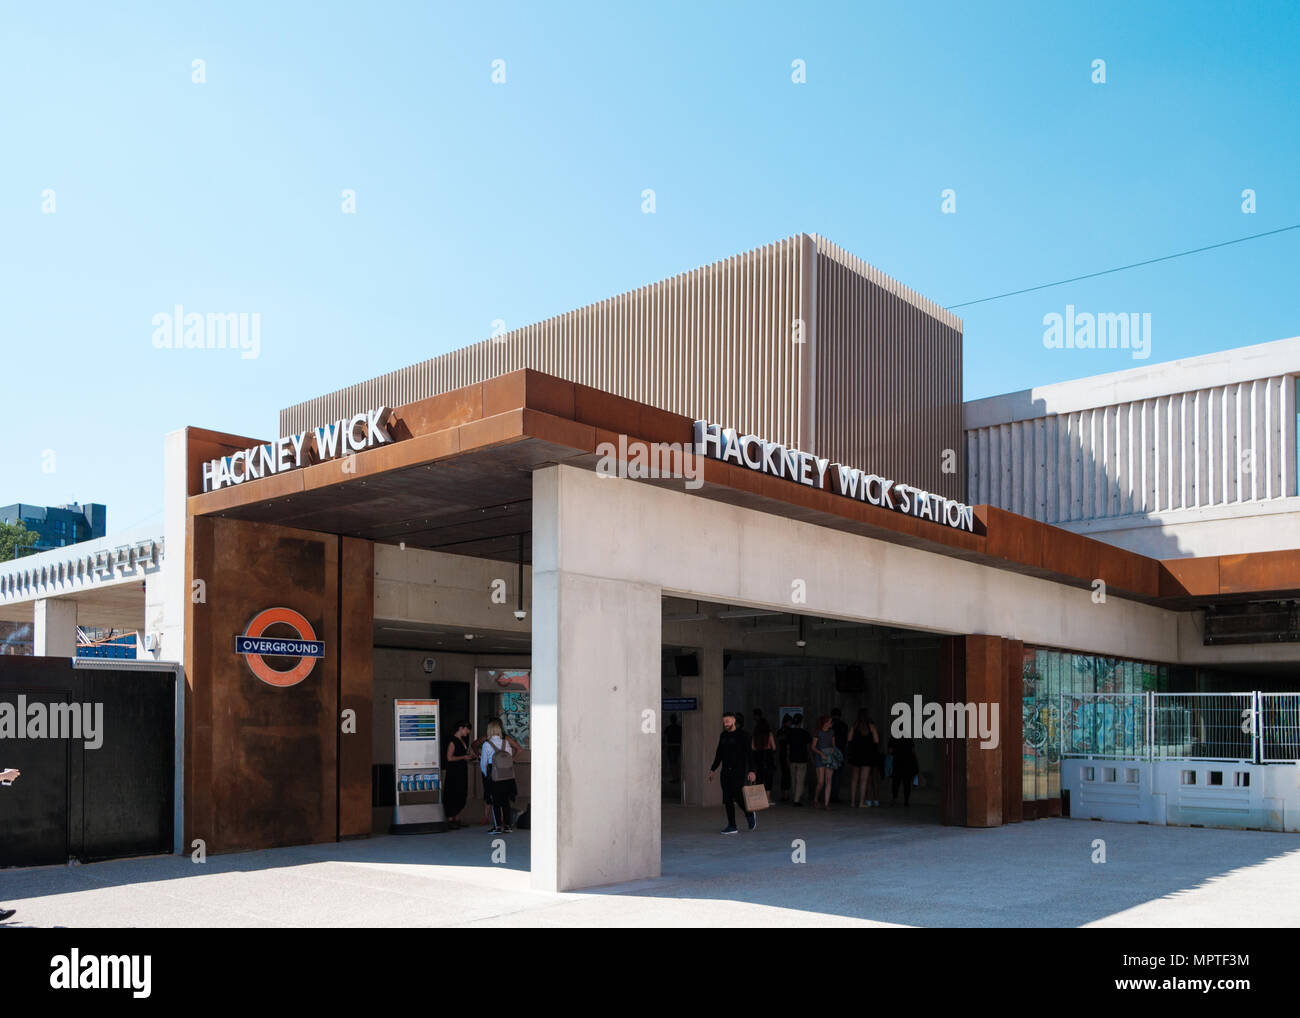 Die neue S-Bahn Station in Hackney Wick, East London, Ticket Halle von Landolt und Braun konzipiert Stockfoto